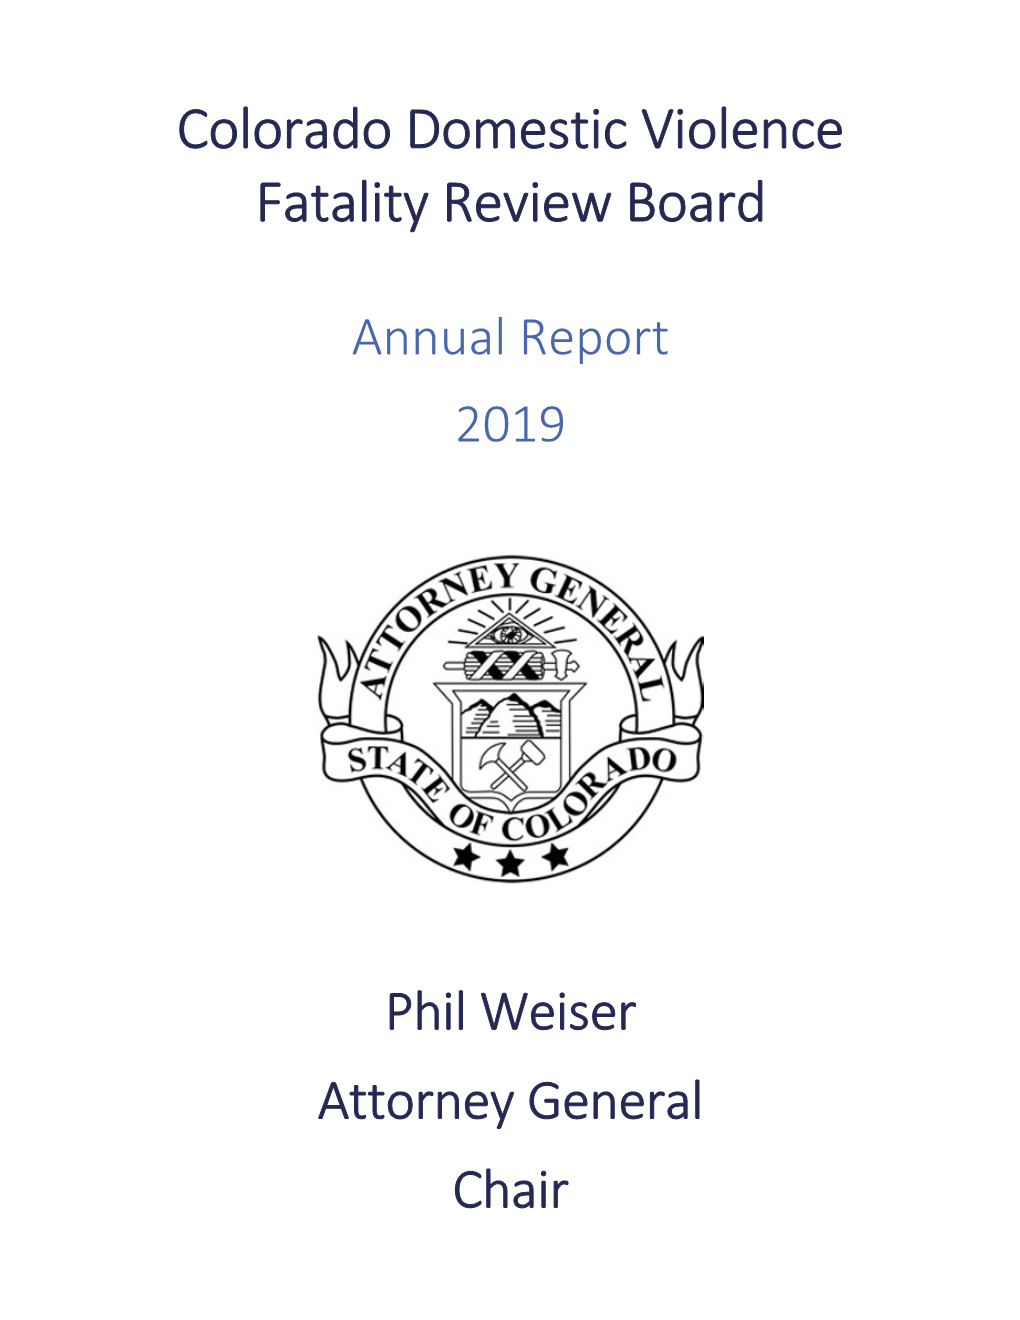 Colorado Domestic Violence Fatality Review Board Report